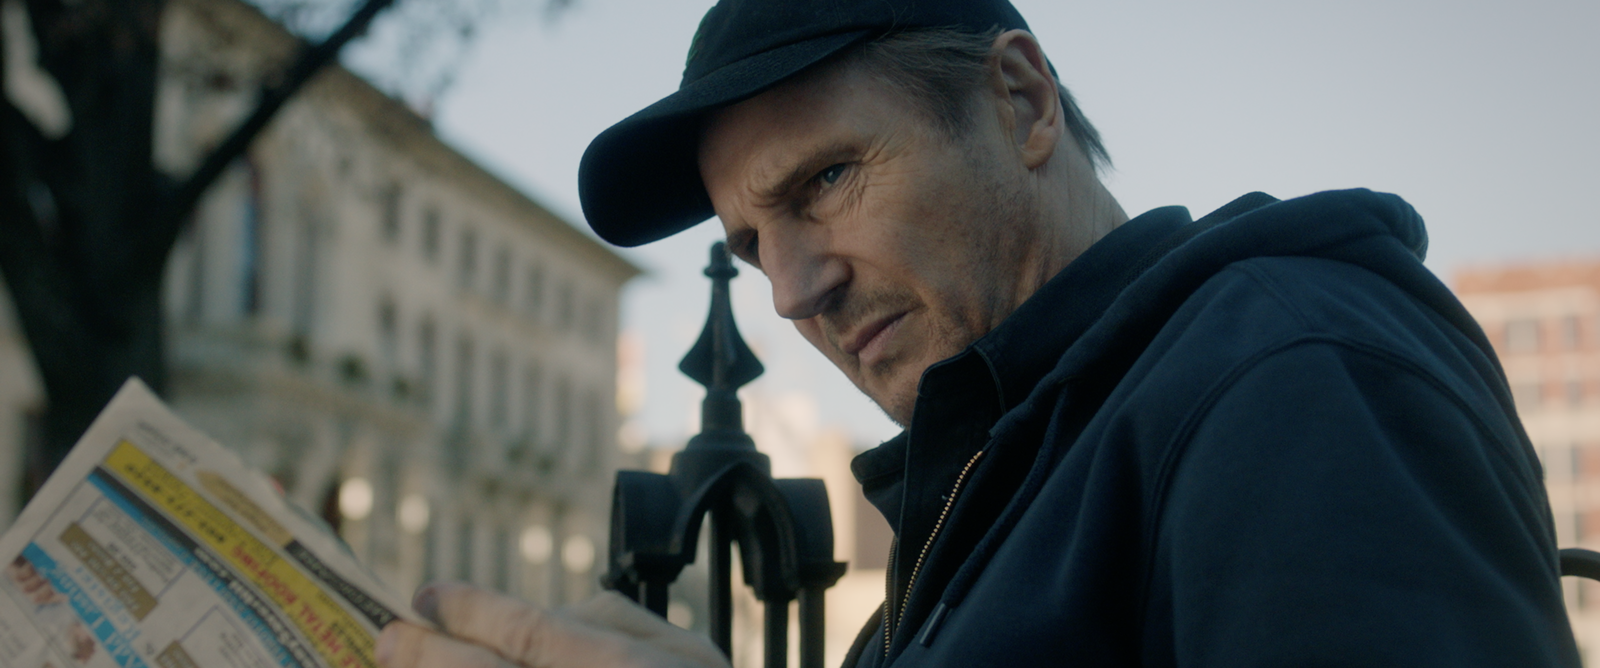 The Good Criminal - le nouveau film de Liam Neeson, au Cinéma le 14 octobre 2020